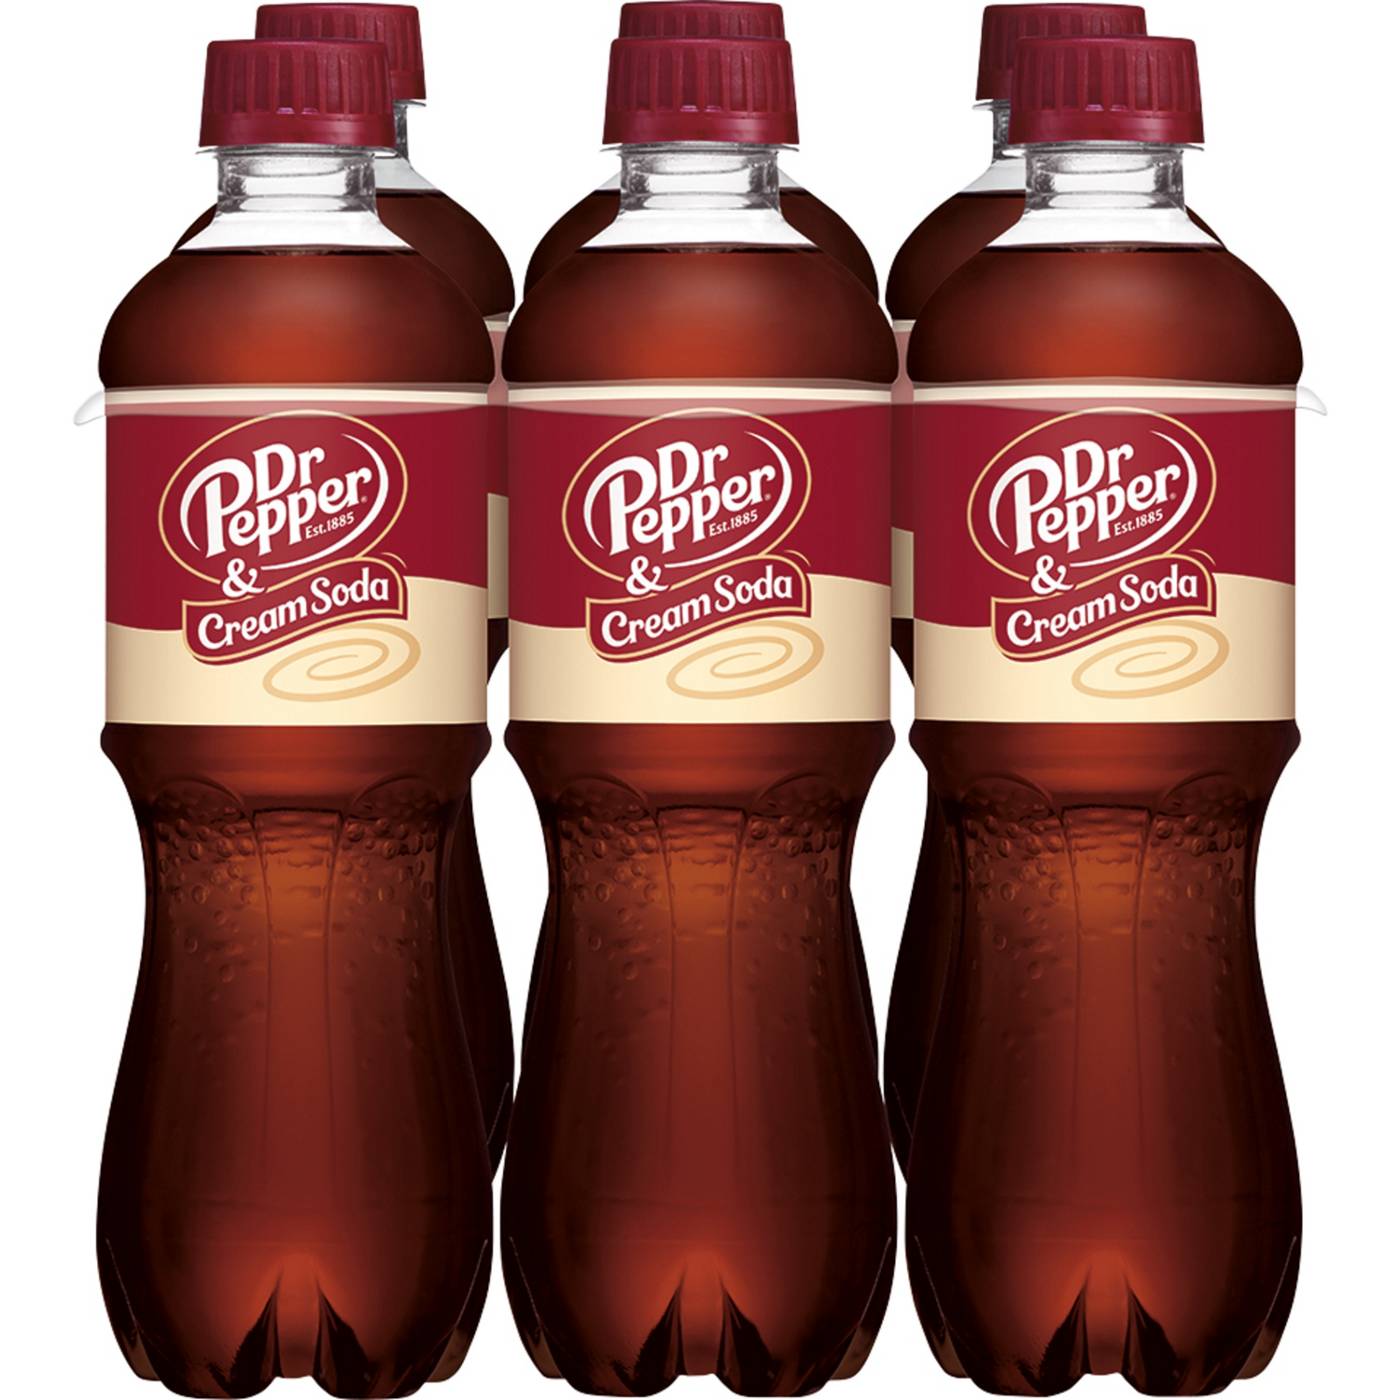 Dr Pepper & Cream Soda .5 L Bottles; image 1 of 7